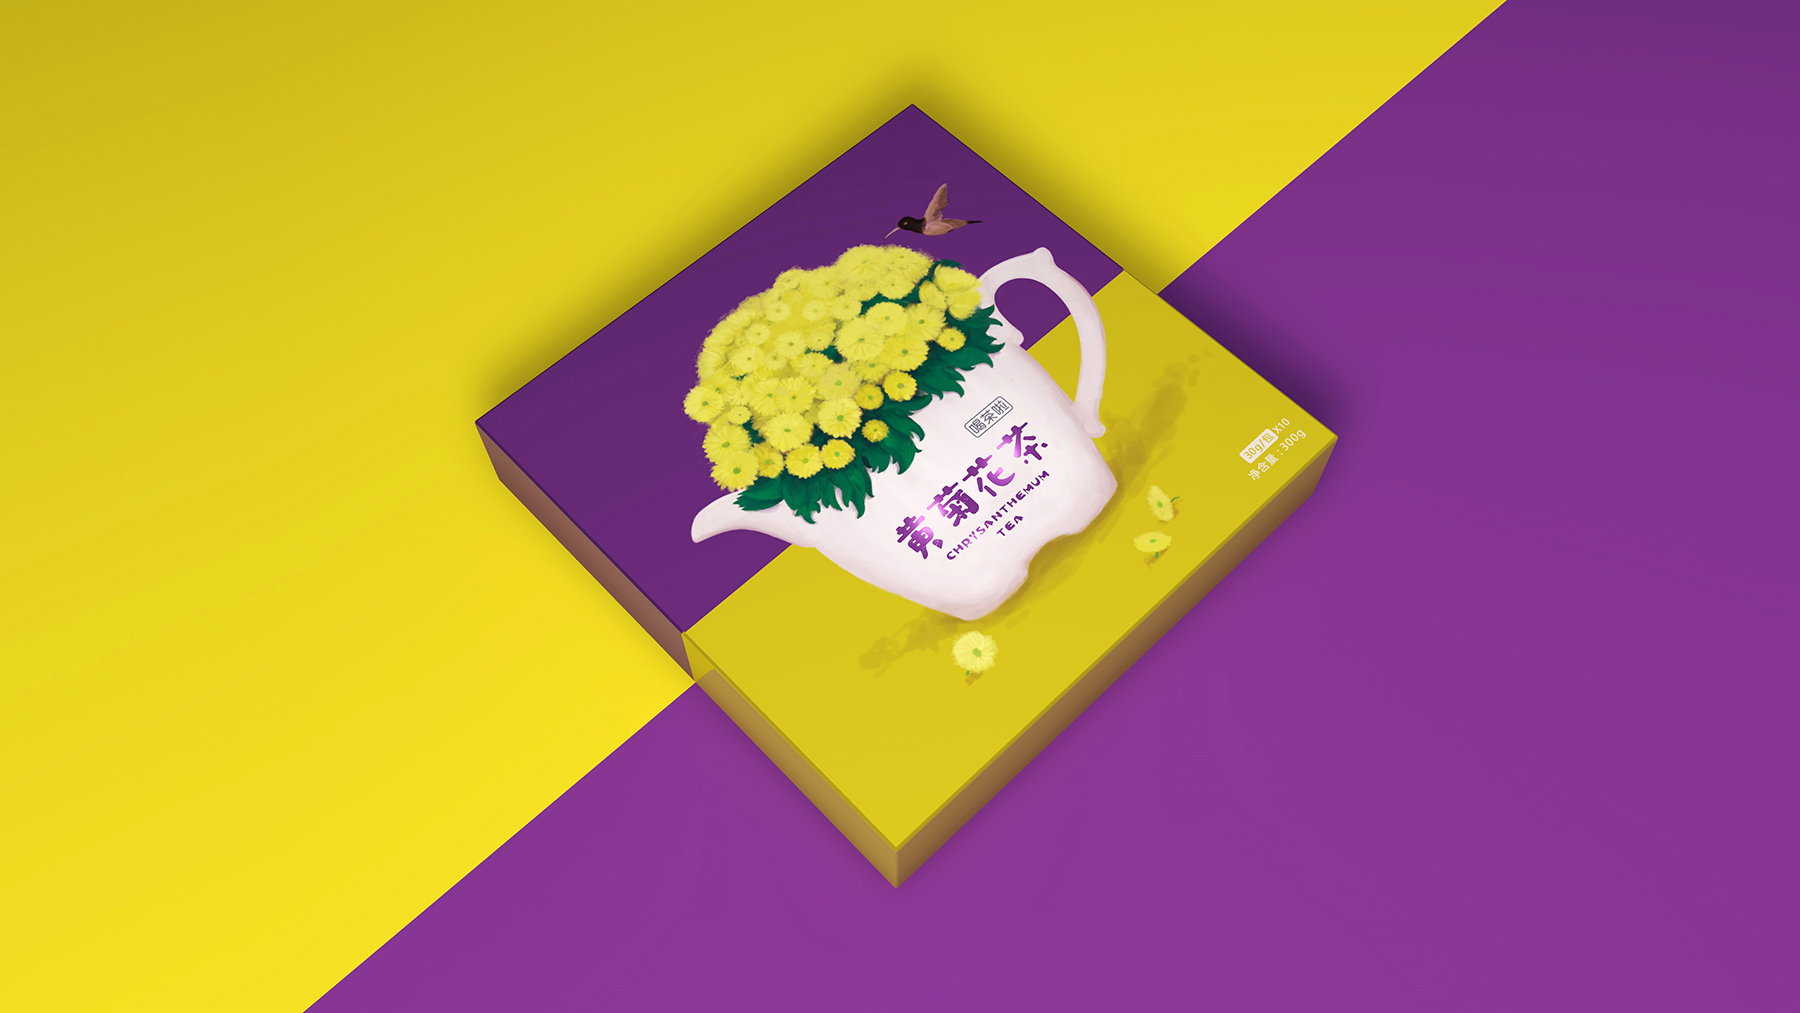 喝茶啦-系列花茶包装设计 手绘花茶包装设计 花茶包装设计哪家好 花茶包装设计公司 第2张